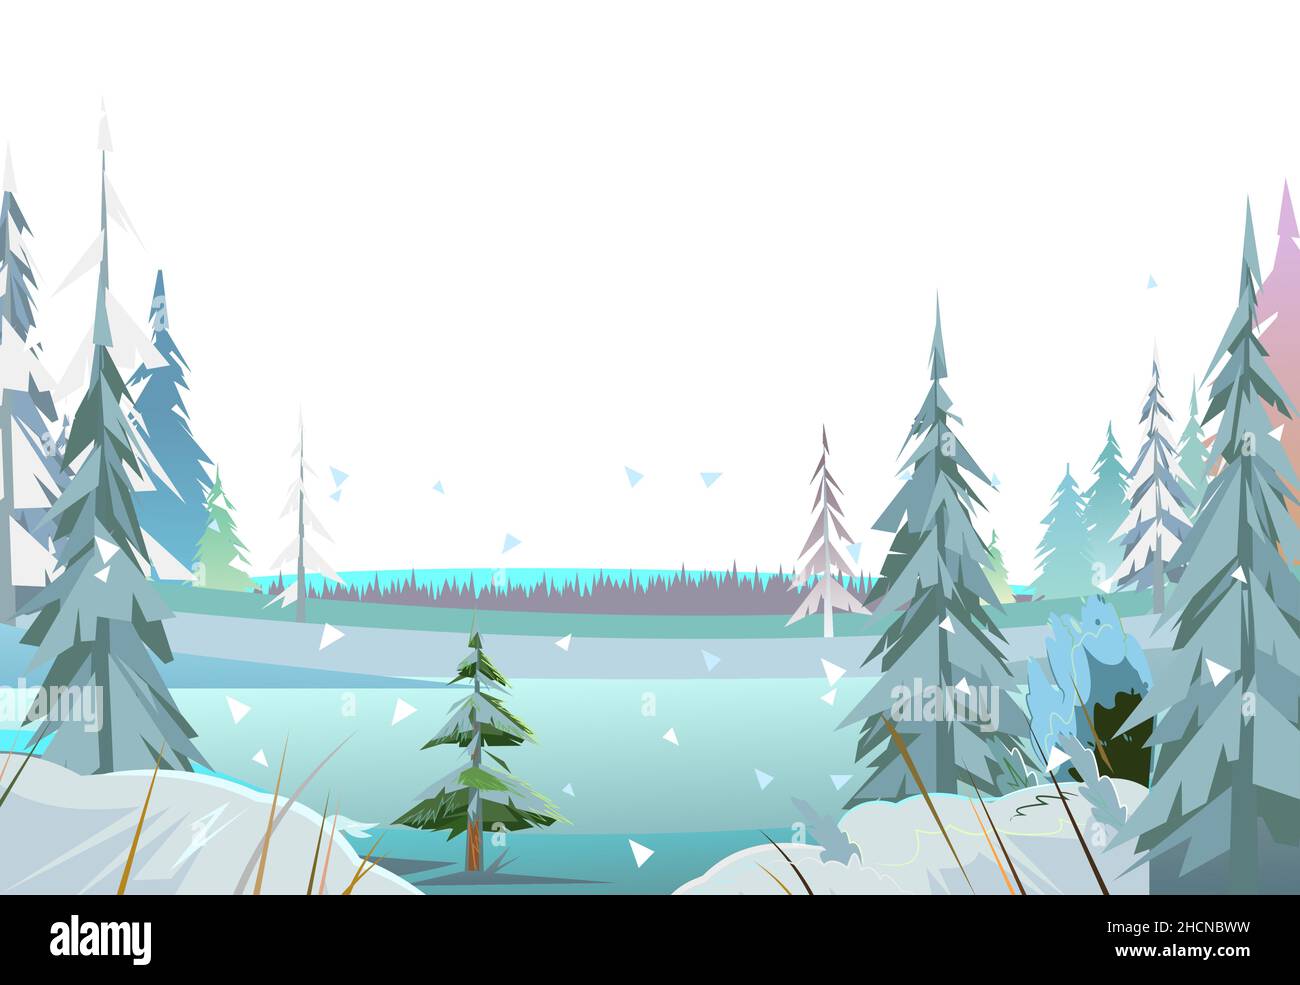 Bosque de invierno de fondo. Árboles coníferas nevados en la ducha de un estanque o río congelado. Cubierto de hielo. La nieve cae. Ilustración en estilo de dibujos animados Ilustración del Vector